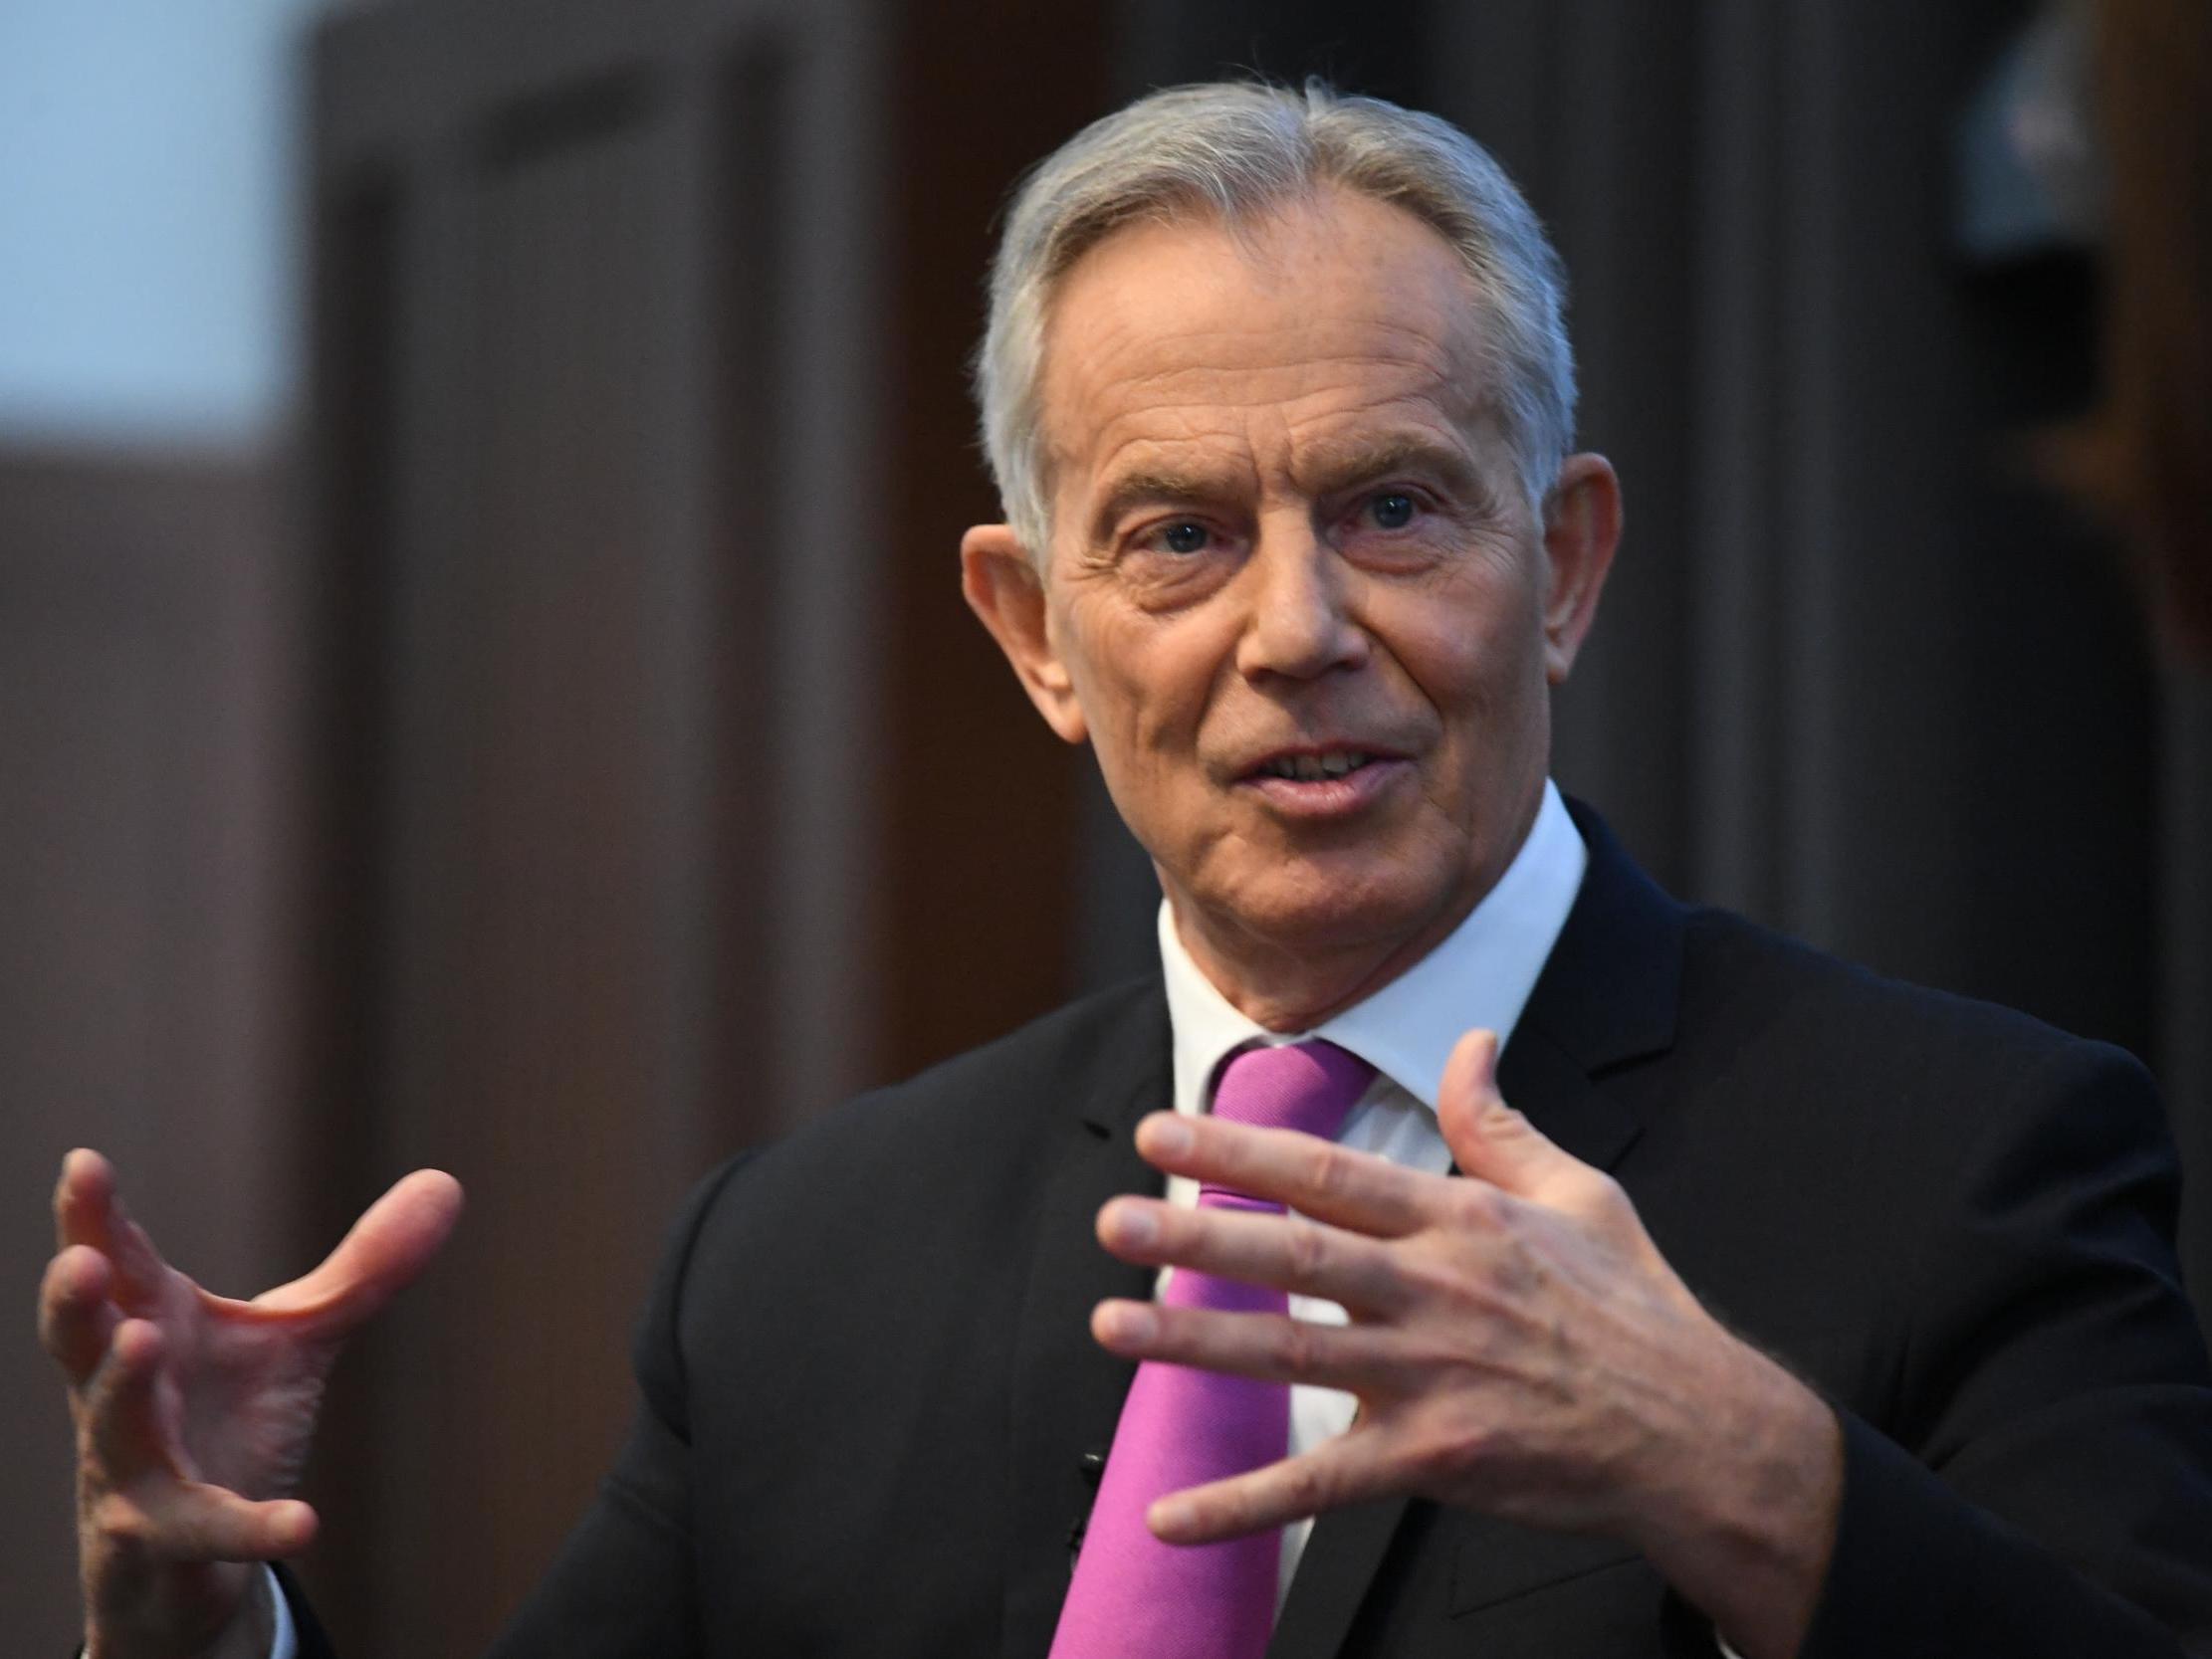 Blair speaks at King’s College London